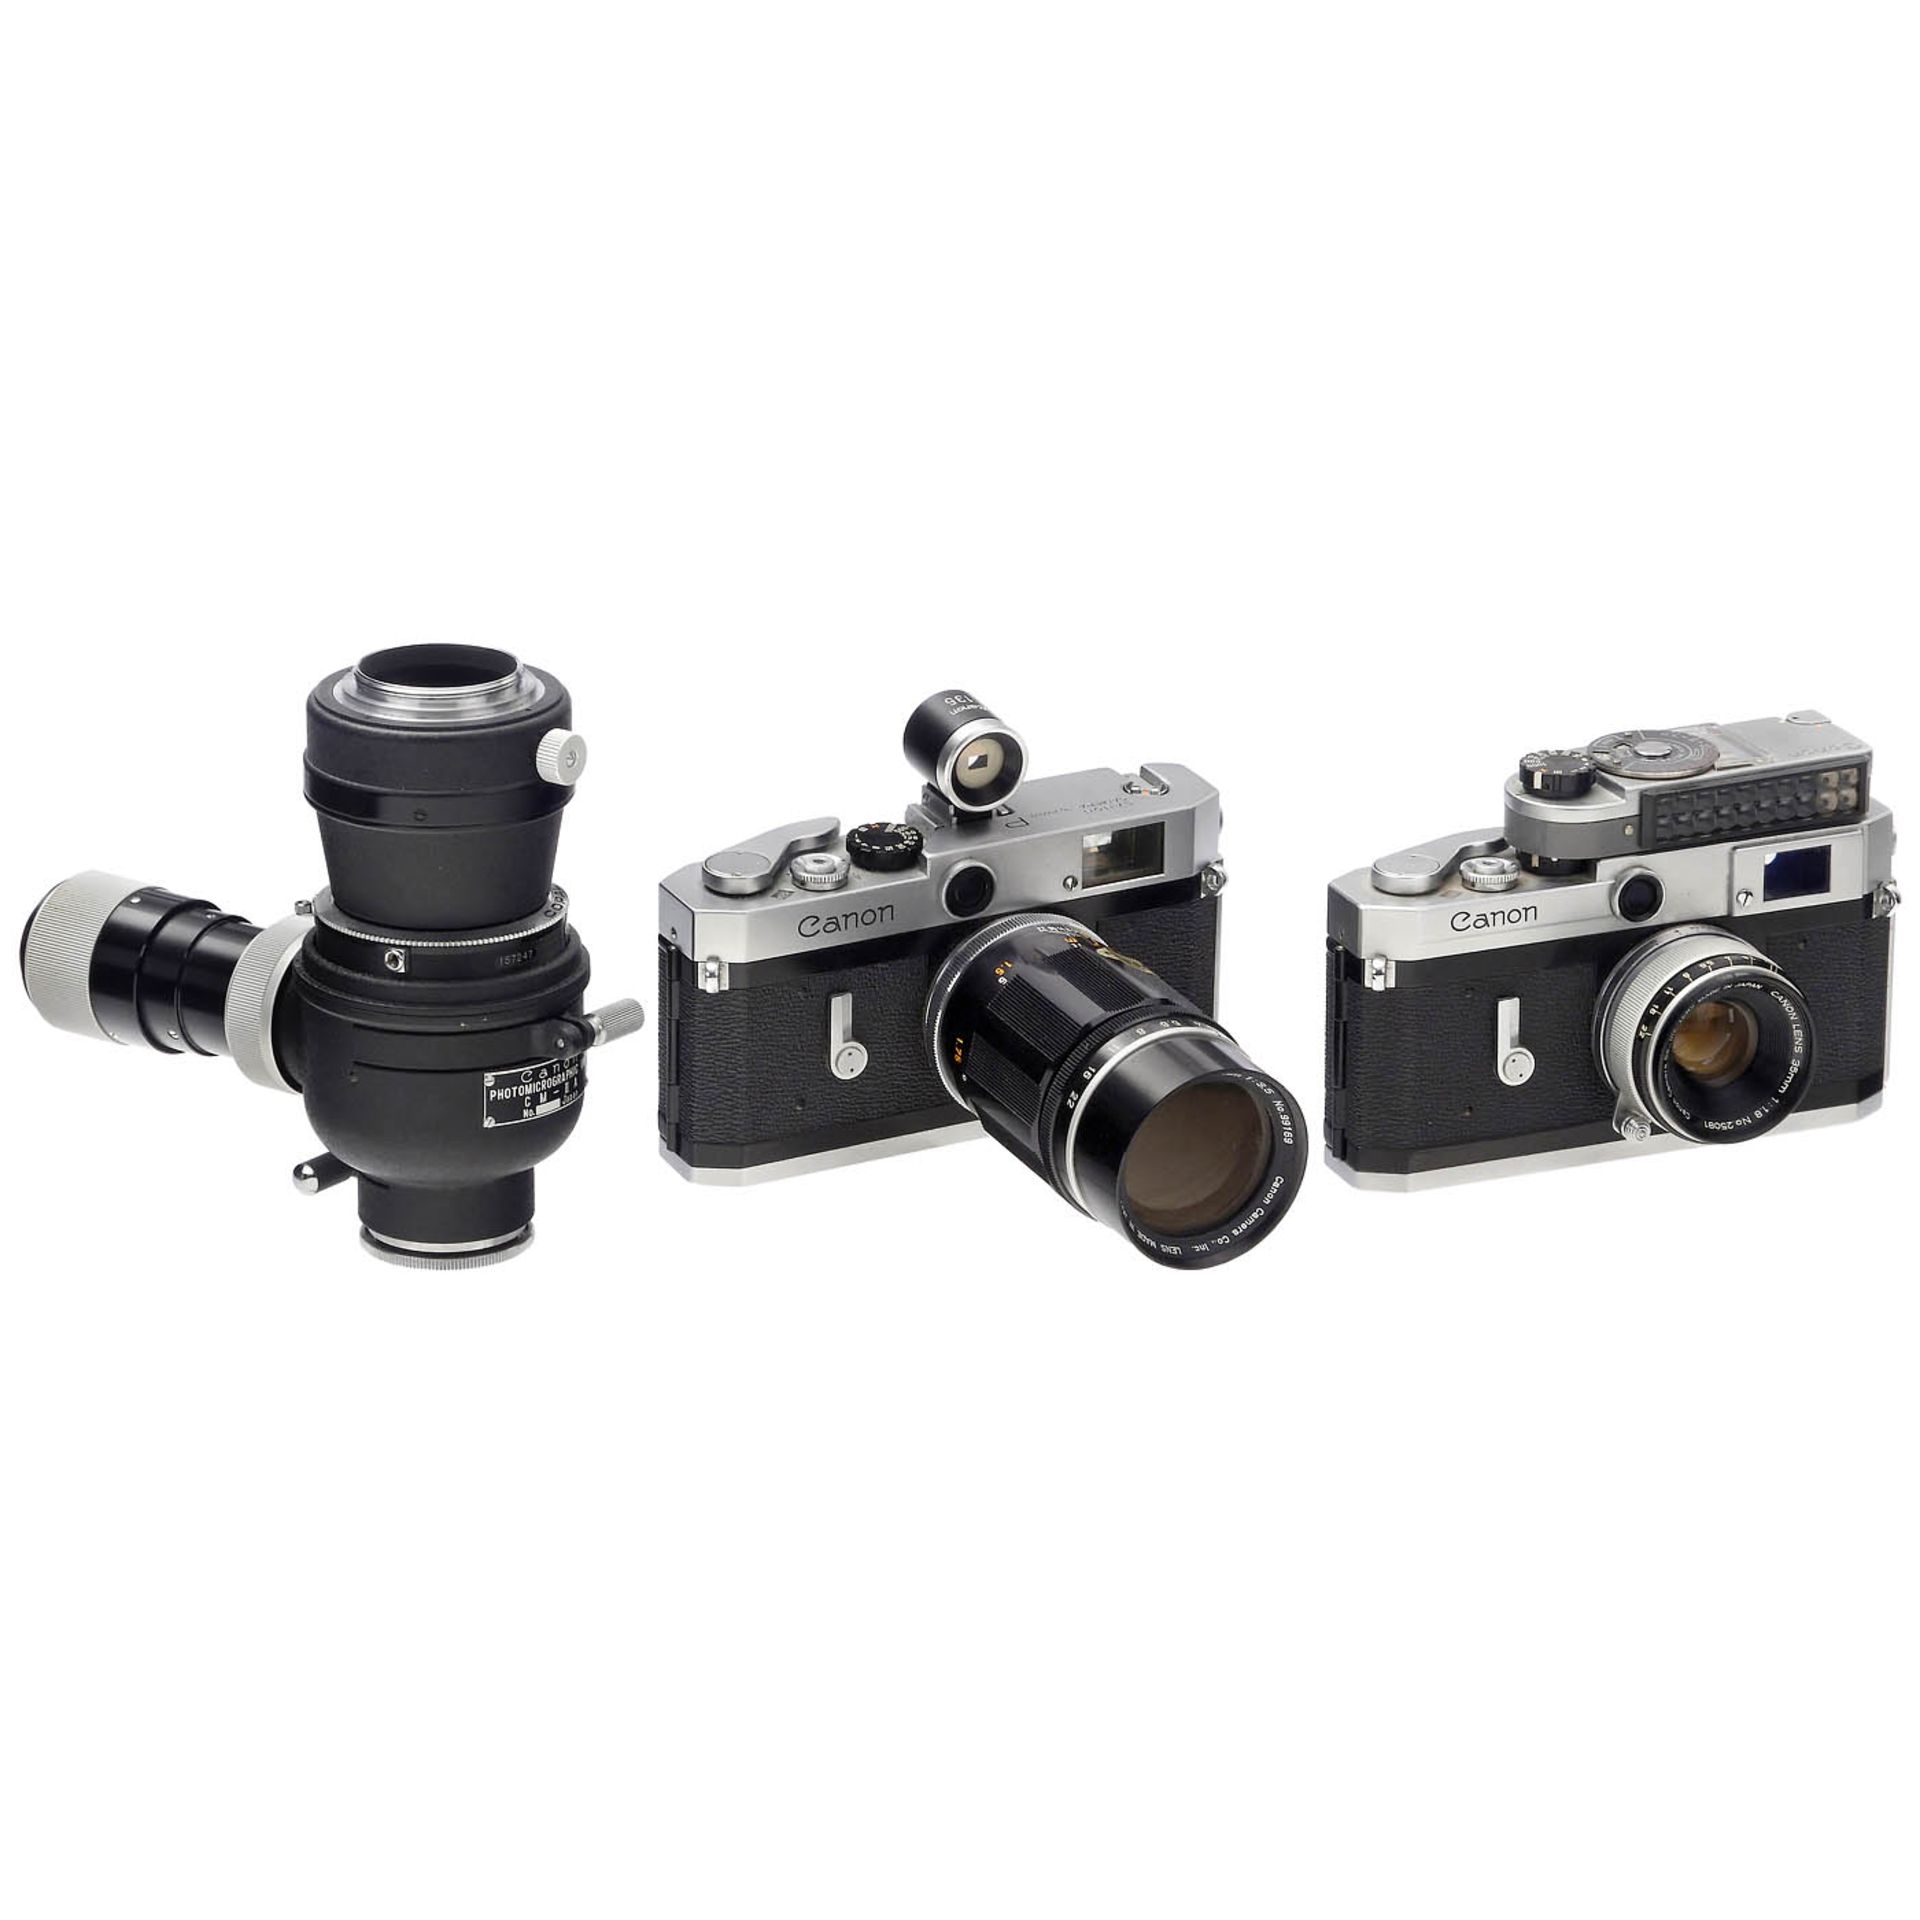 Canon VI-L, Canon P and Canon Lens 4.5/400 mm - Image 2 of 3